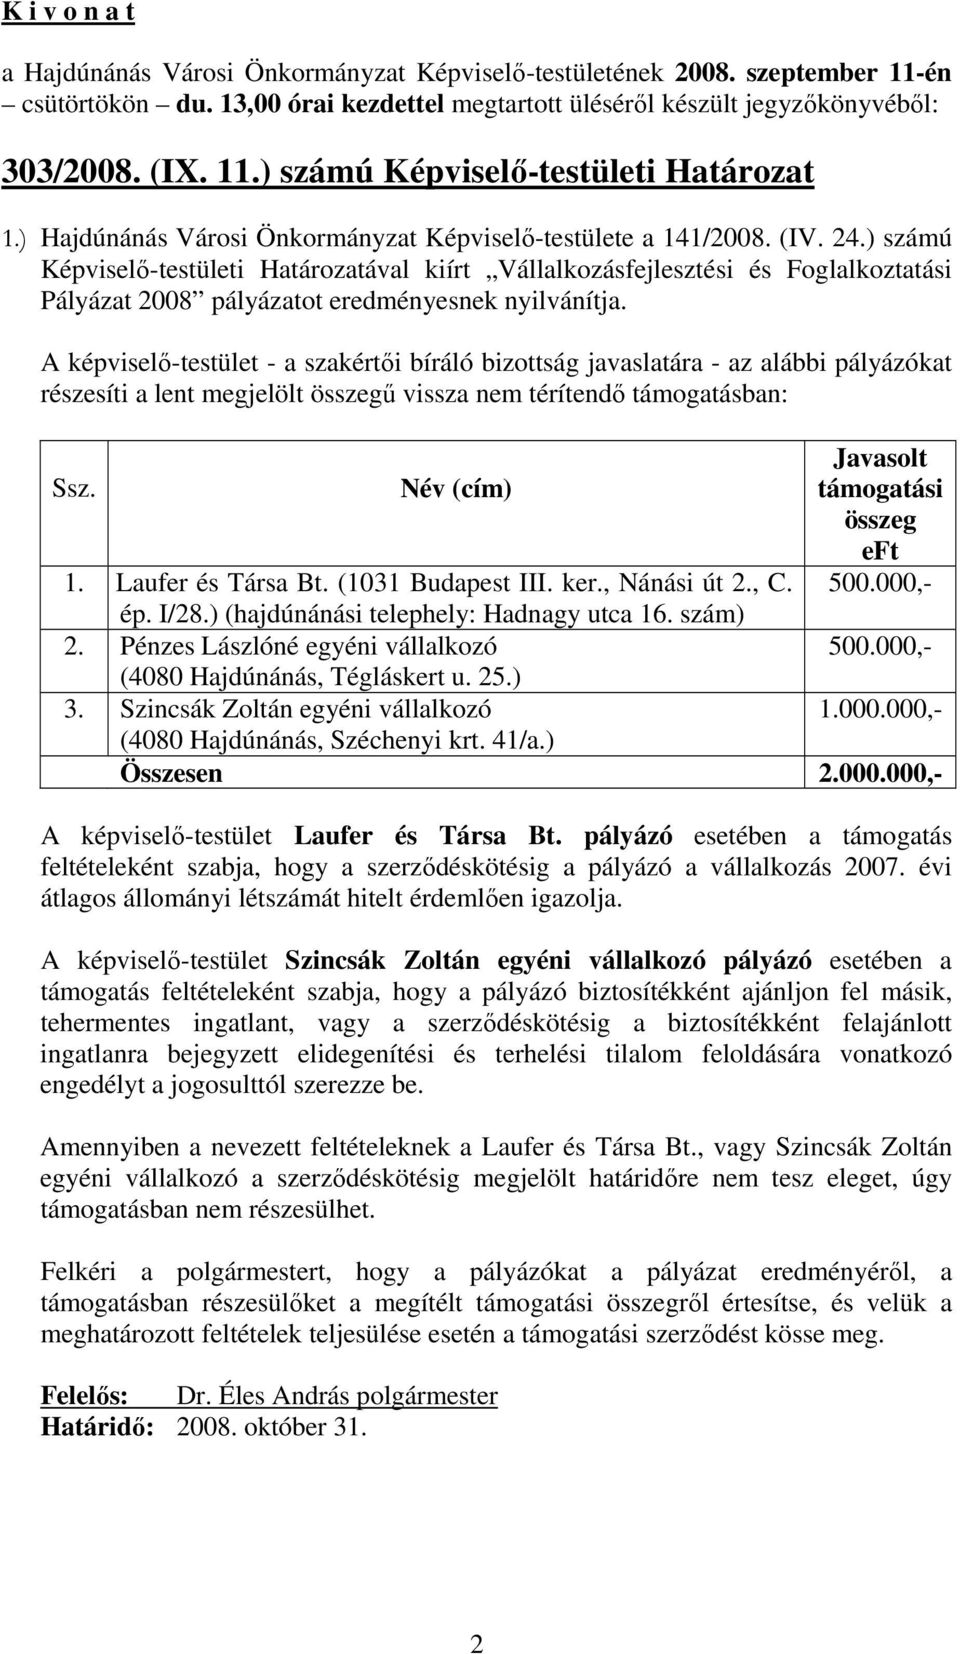 ) számú Képviselı-testületi Határozatával kiírt Vállalkozásfejlesztési és Foglalkoztatási Pályázat 2008 pályázatot eredményesnek nyilvánítja.